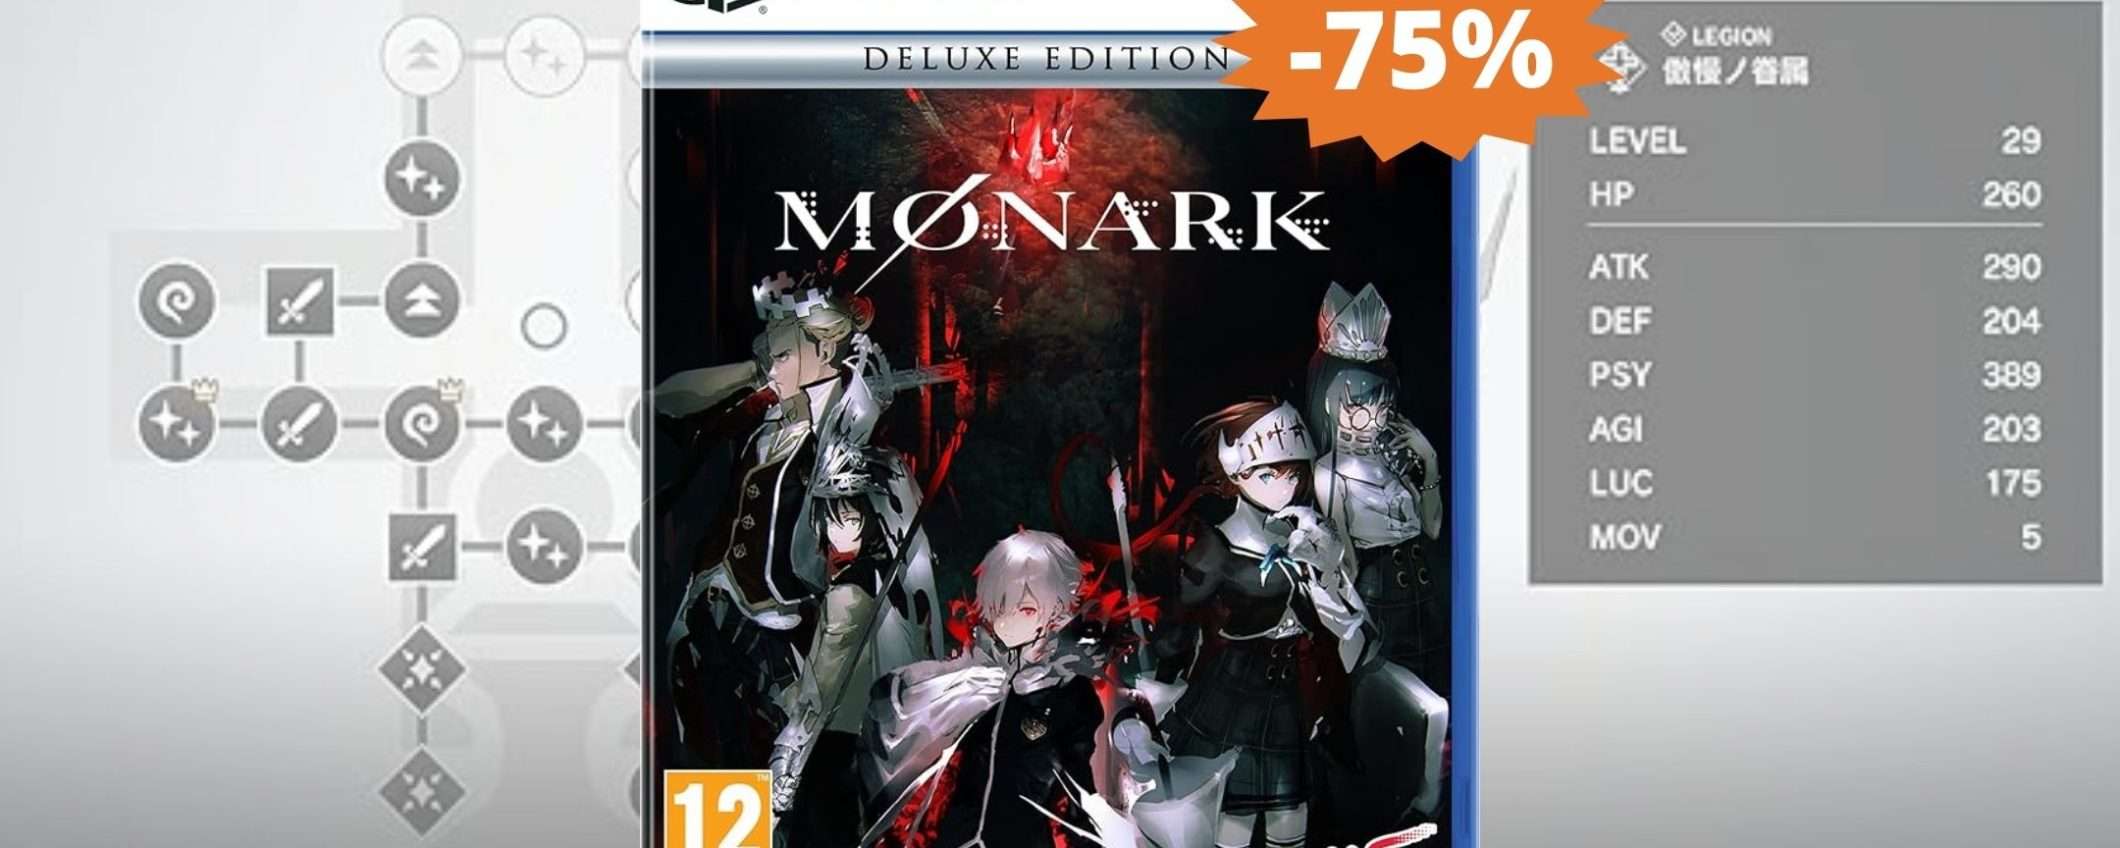 Monark - Deluxe Edition per PS5: un AFFARE epico su Amazon (-75%)